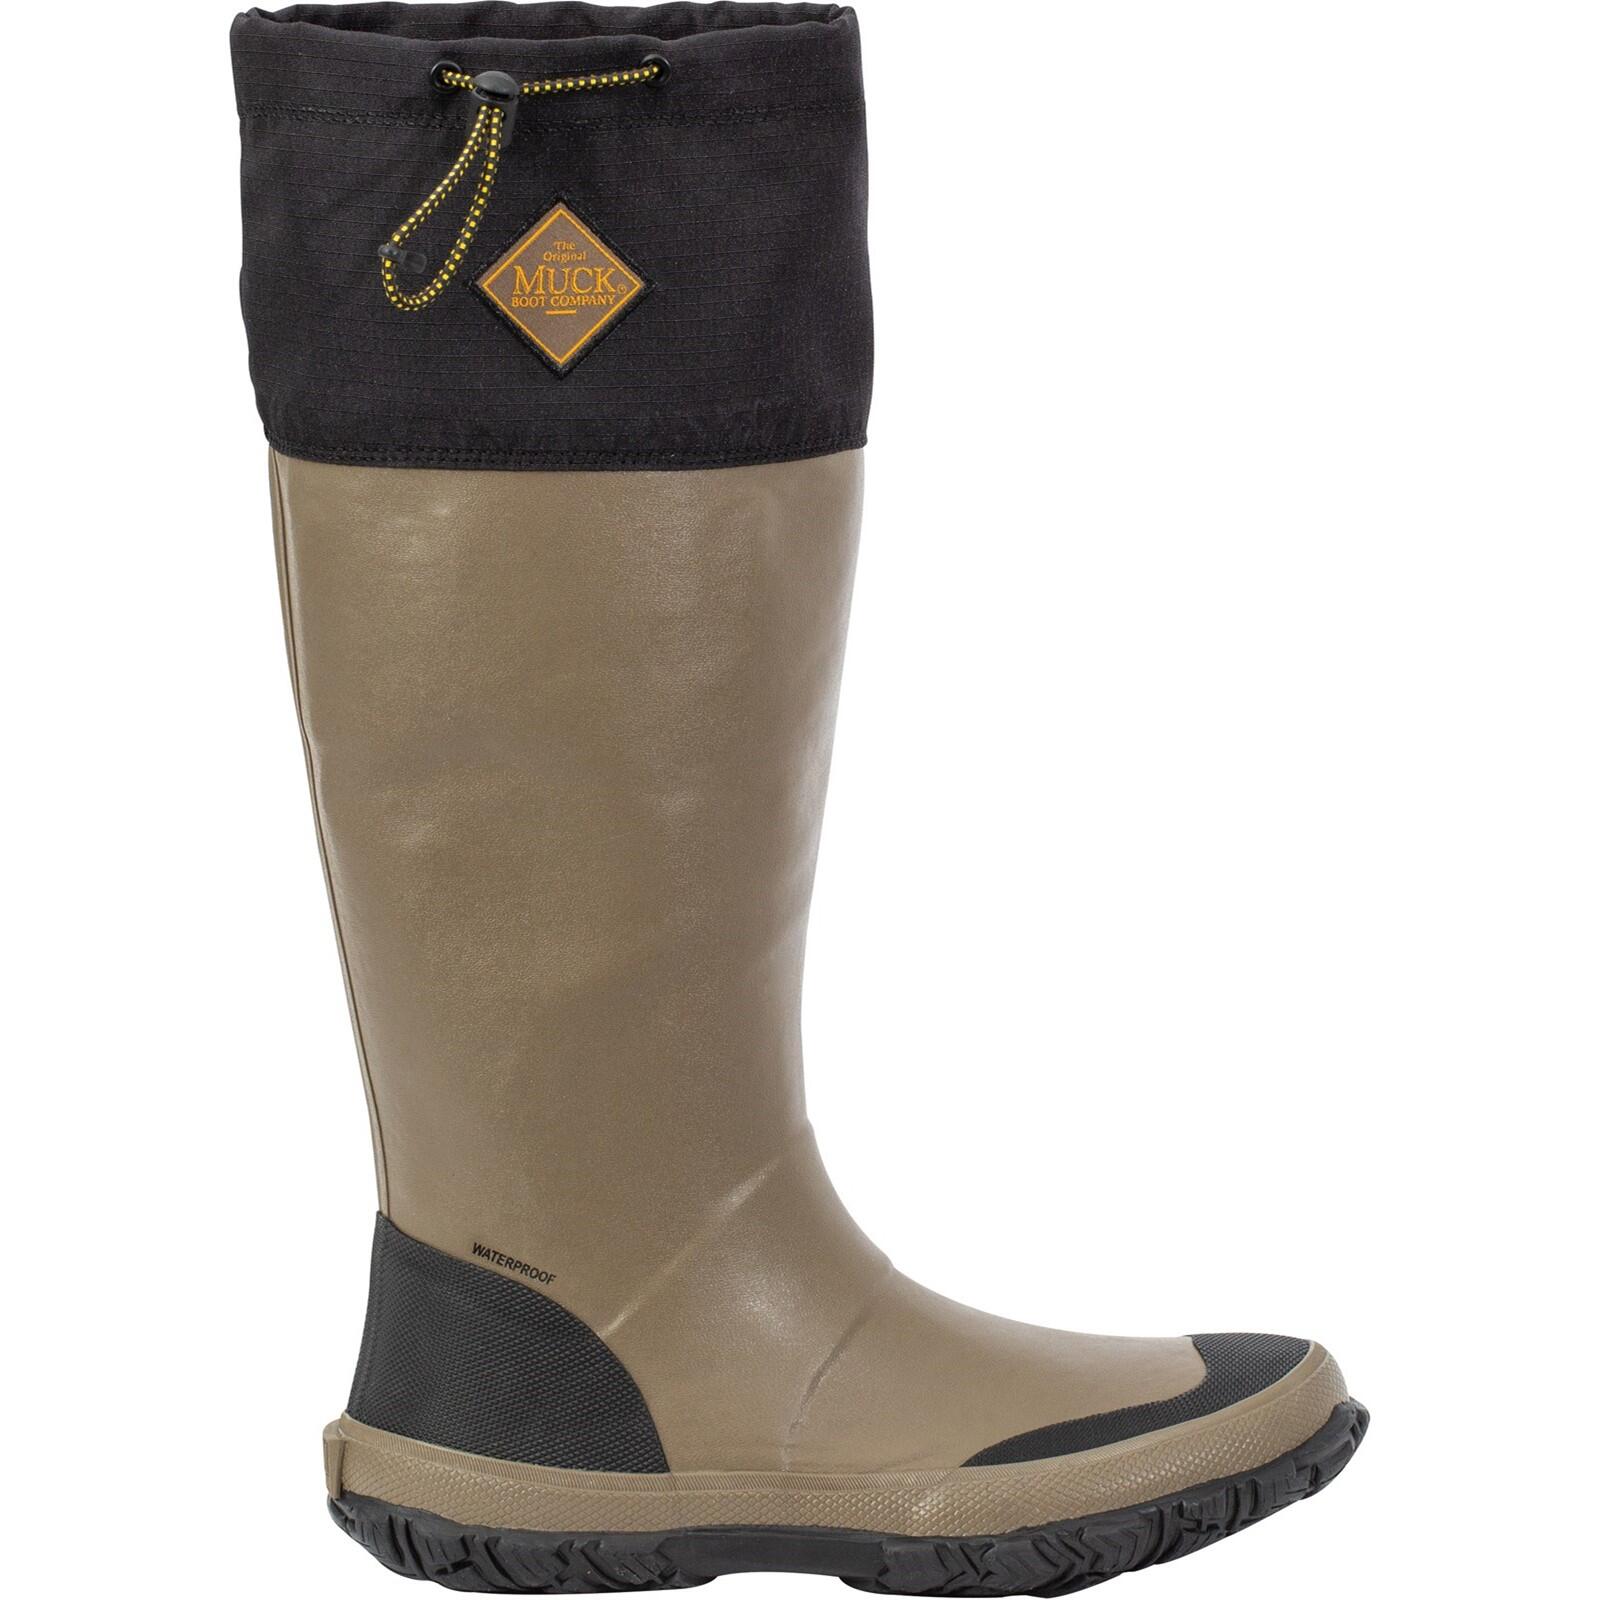 Muck Boots Apres Boot Women's Waterproof Slip On Weather Wellingtons 